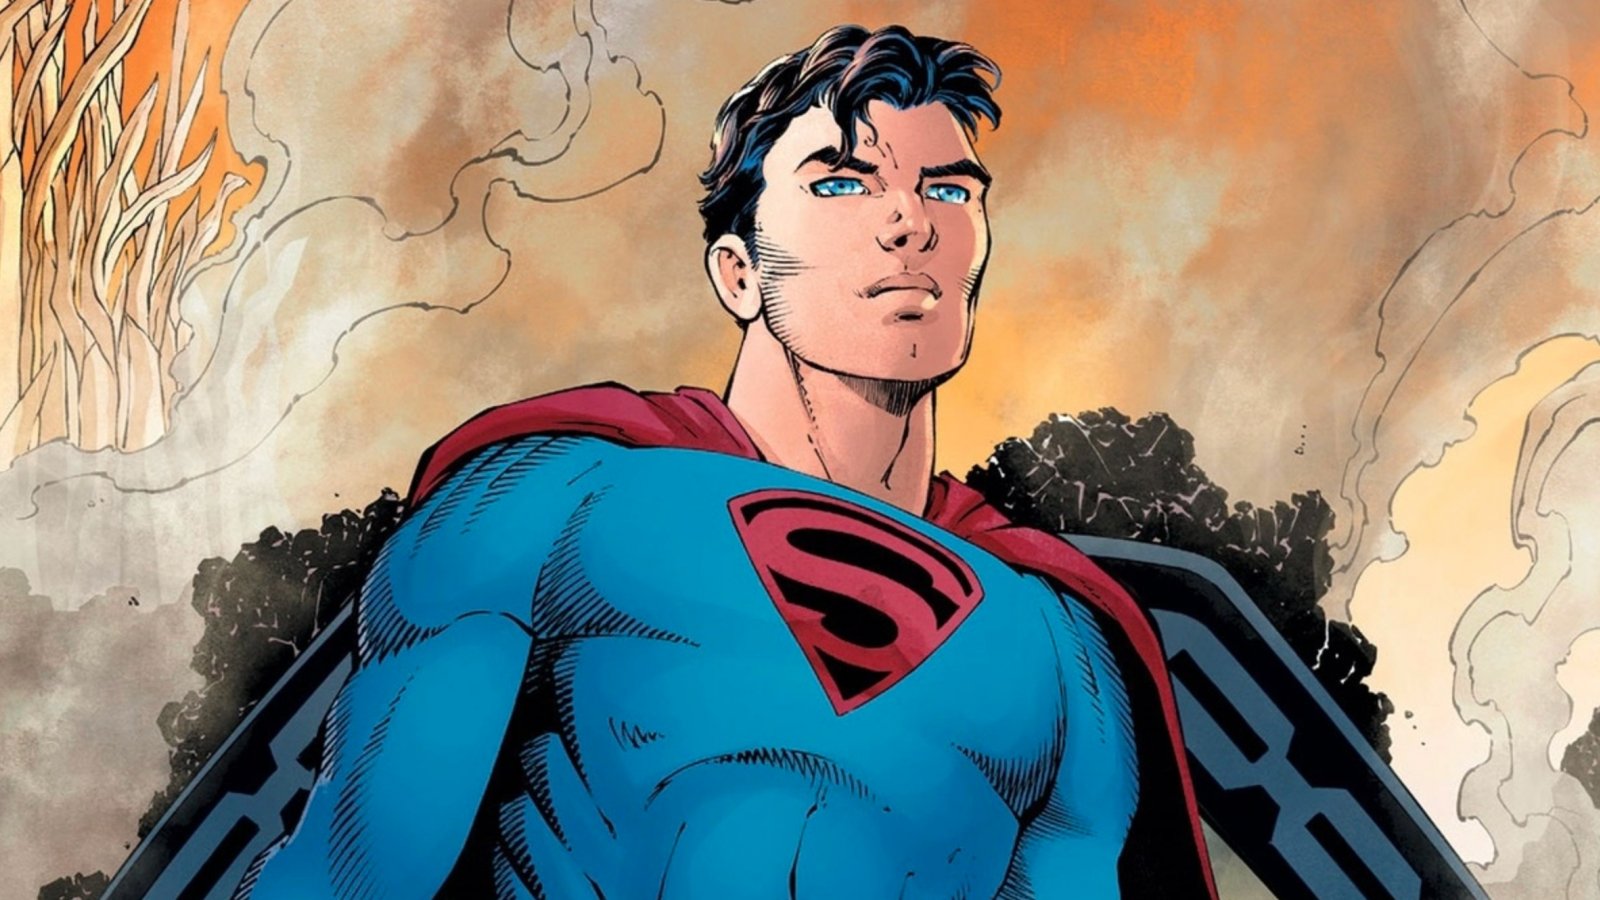 Superman: Jacob Elordi di Euphoria tra i papabili. Una fan-art mostra che sarebbe perfetto